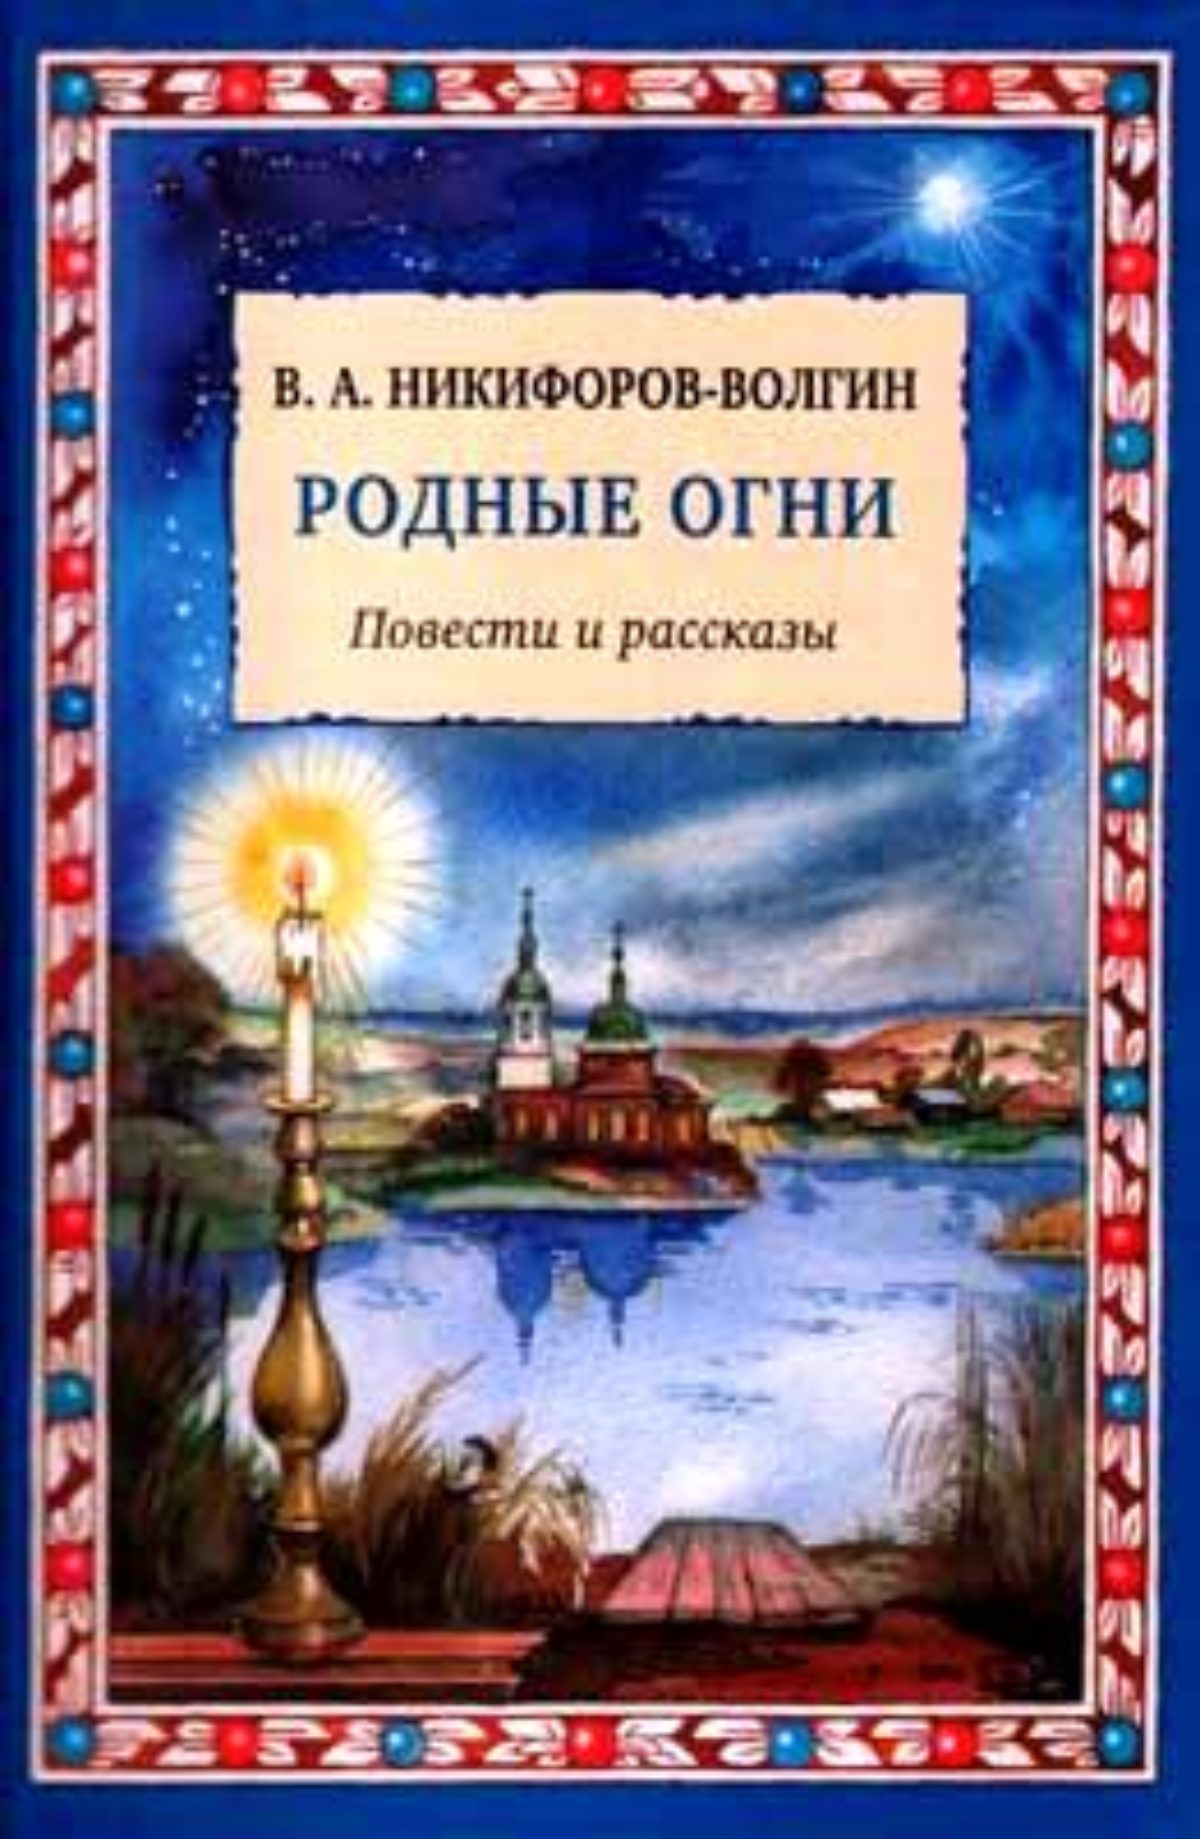 Доклад: Бытописатель благочестия Никифоров-Волгин